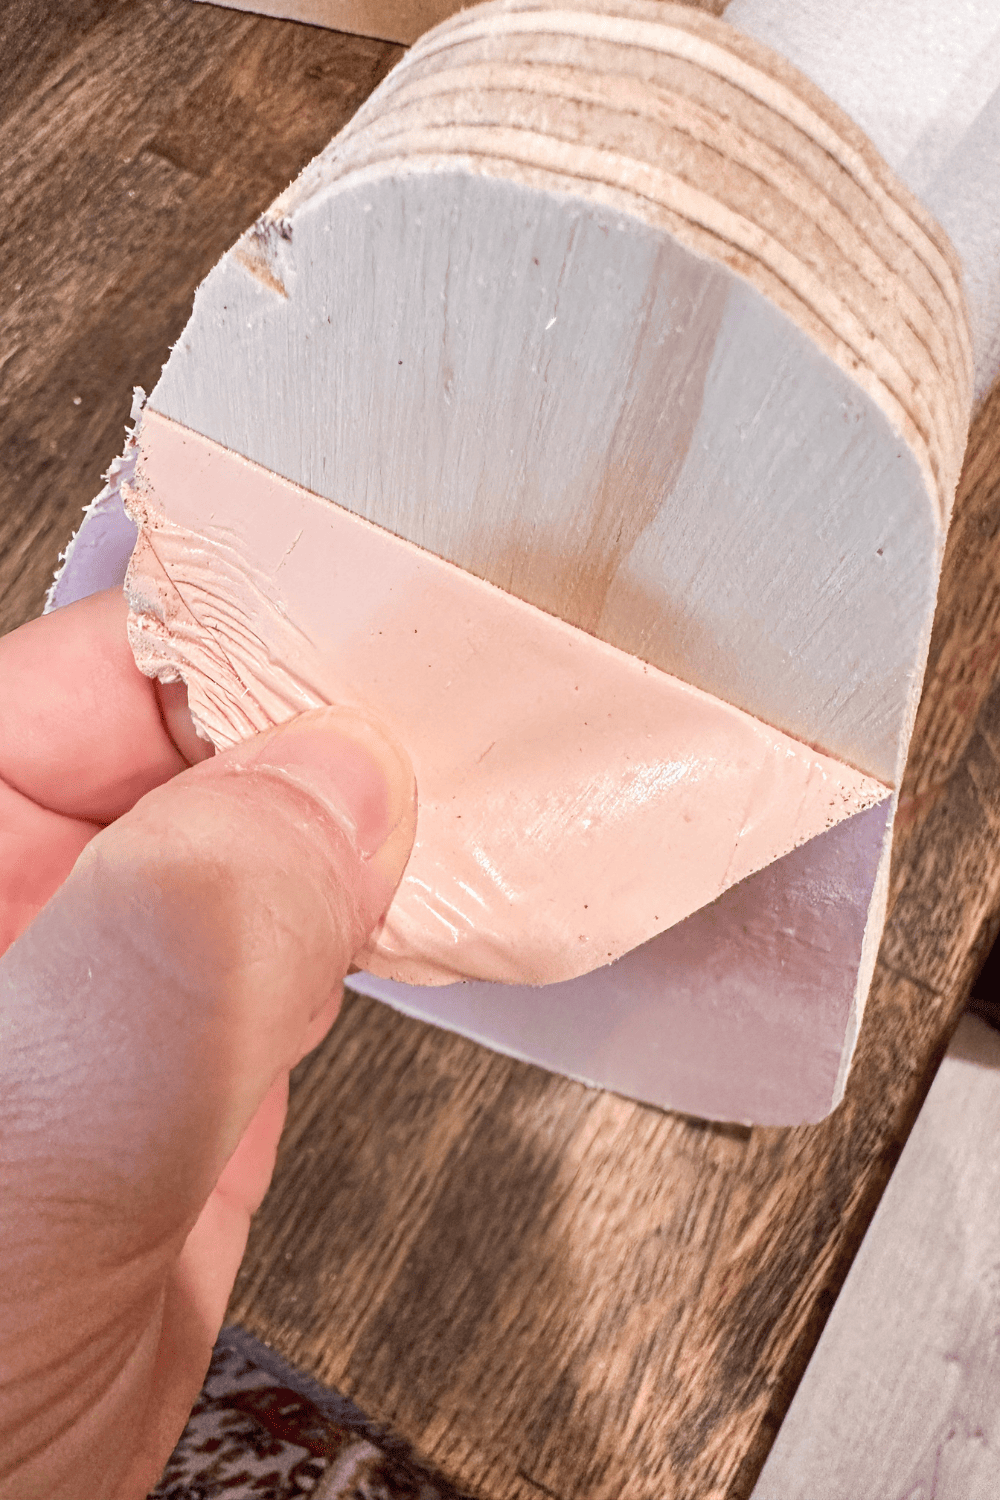 Hand peeling pink vinyl off of plywood